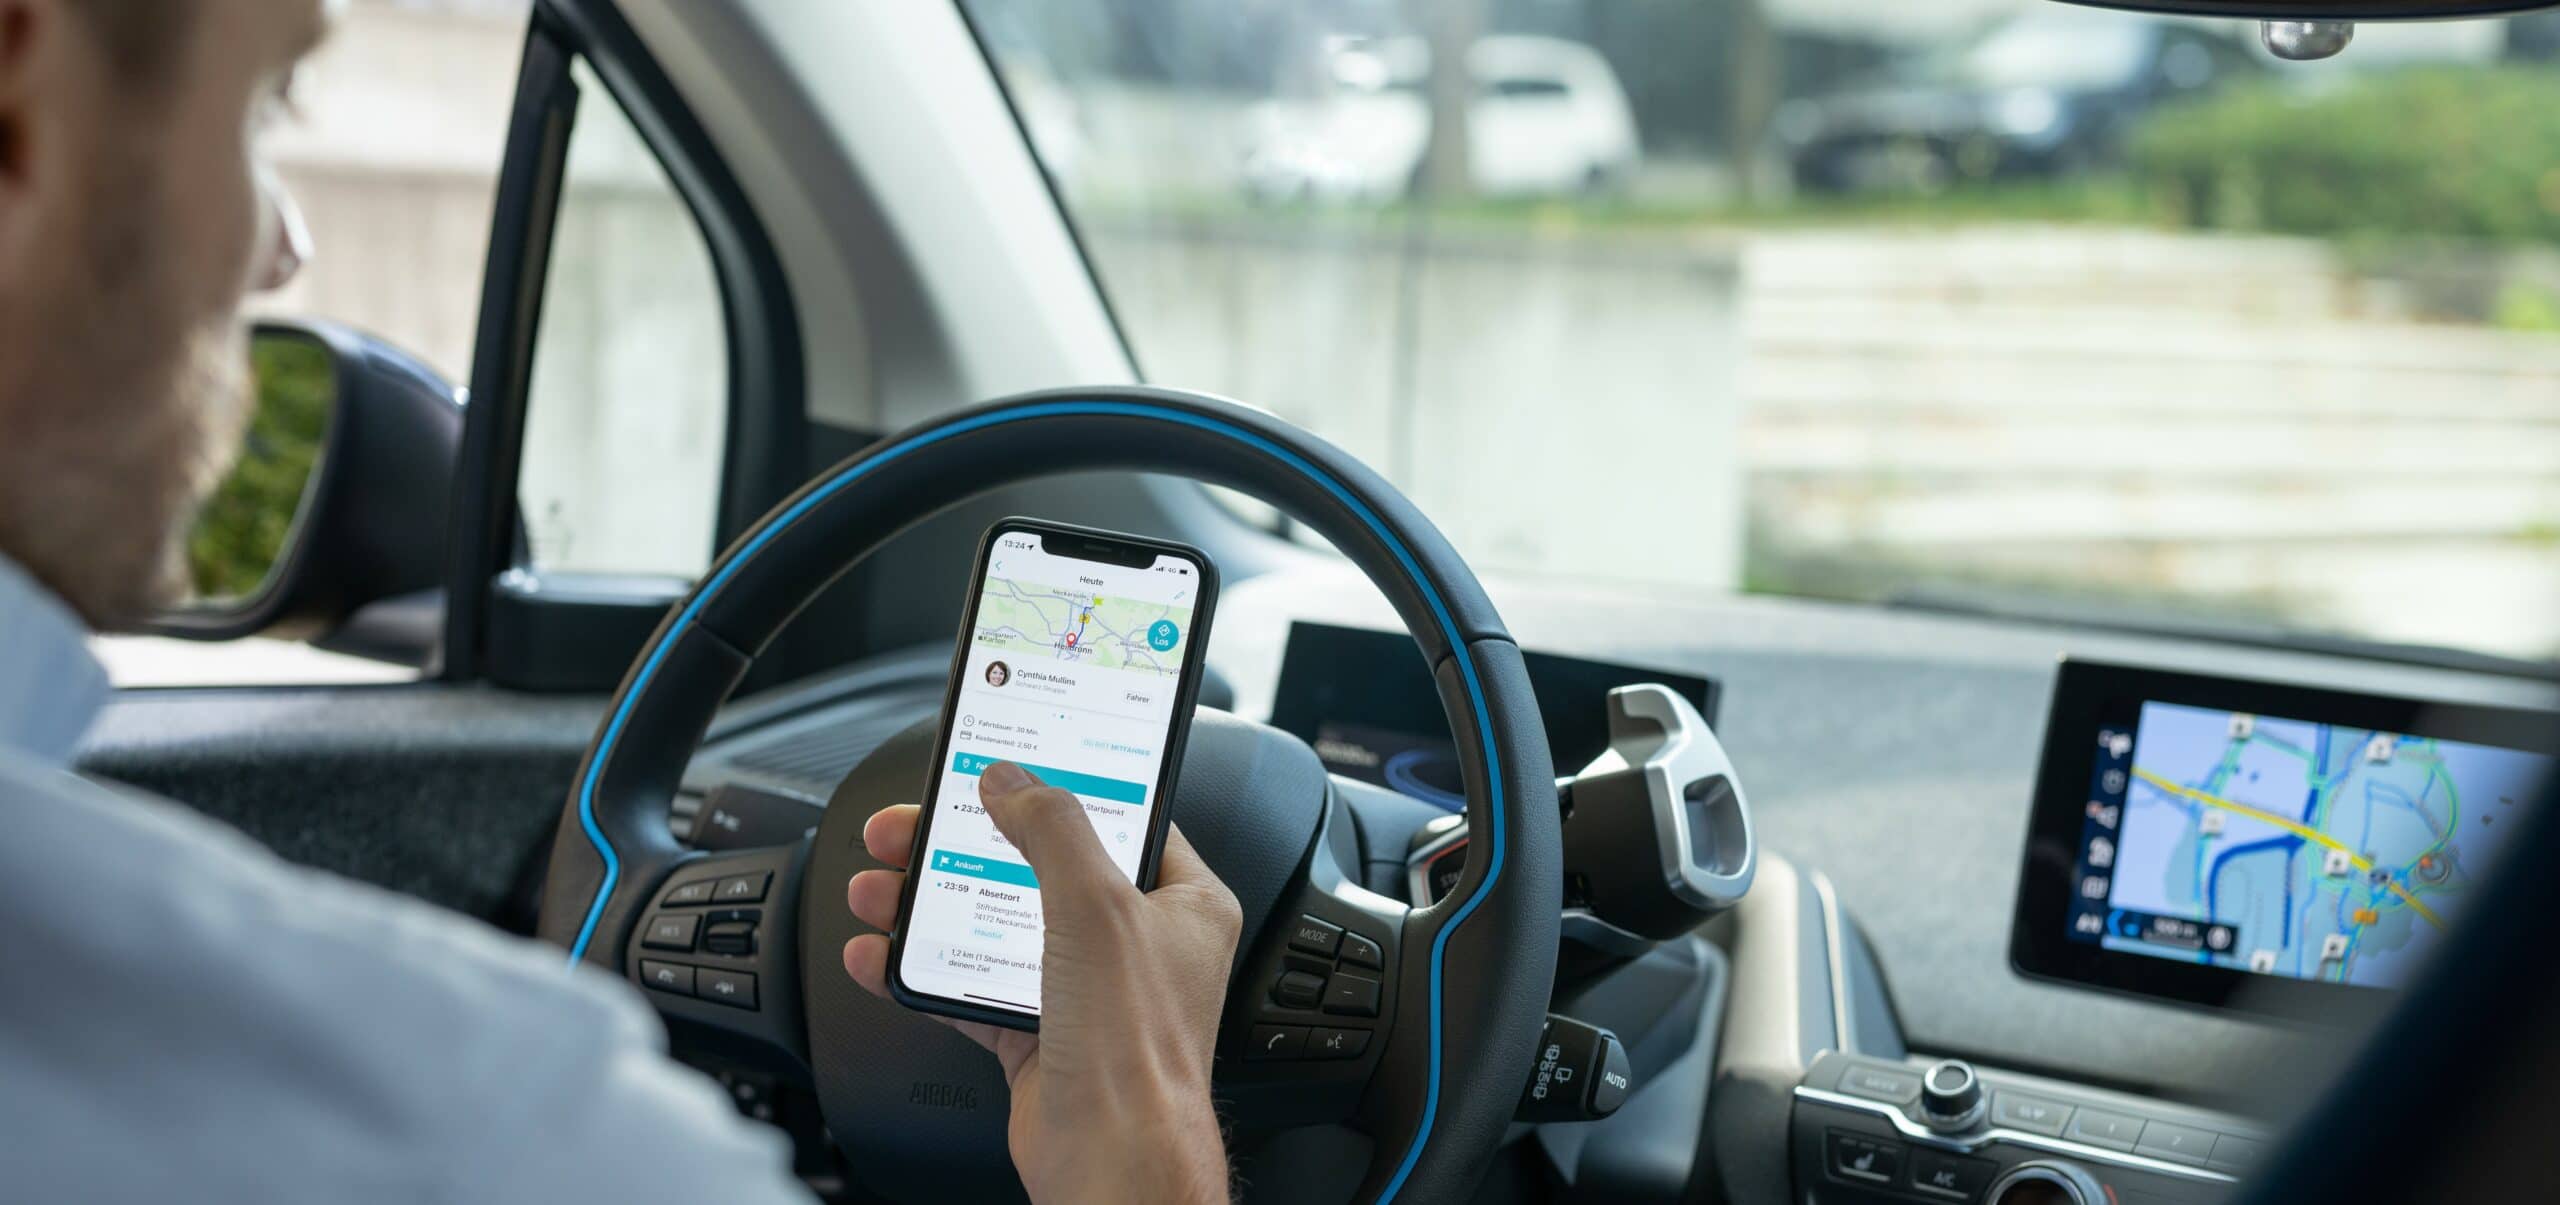 Autofahrer, der die smarte Mitfahrlösung twogo als App auf seinem Smartphone nutzt